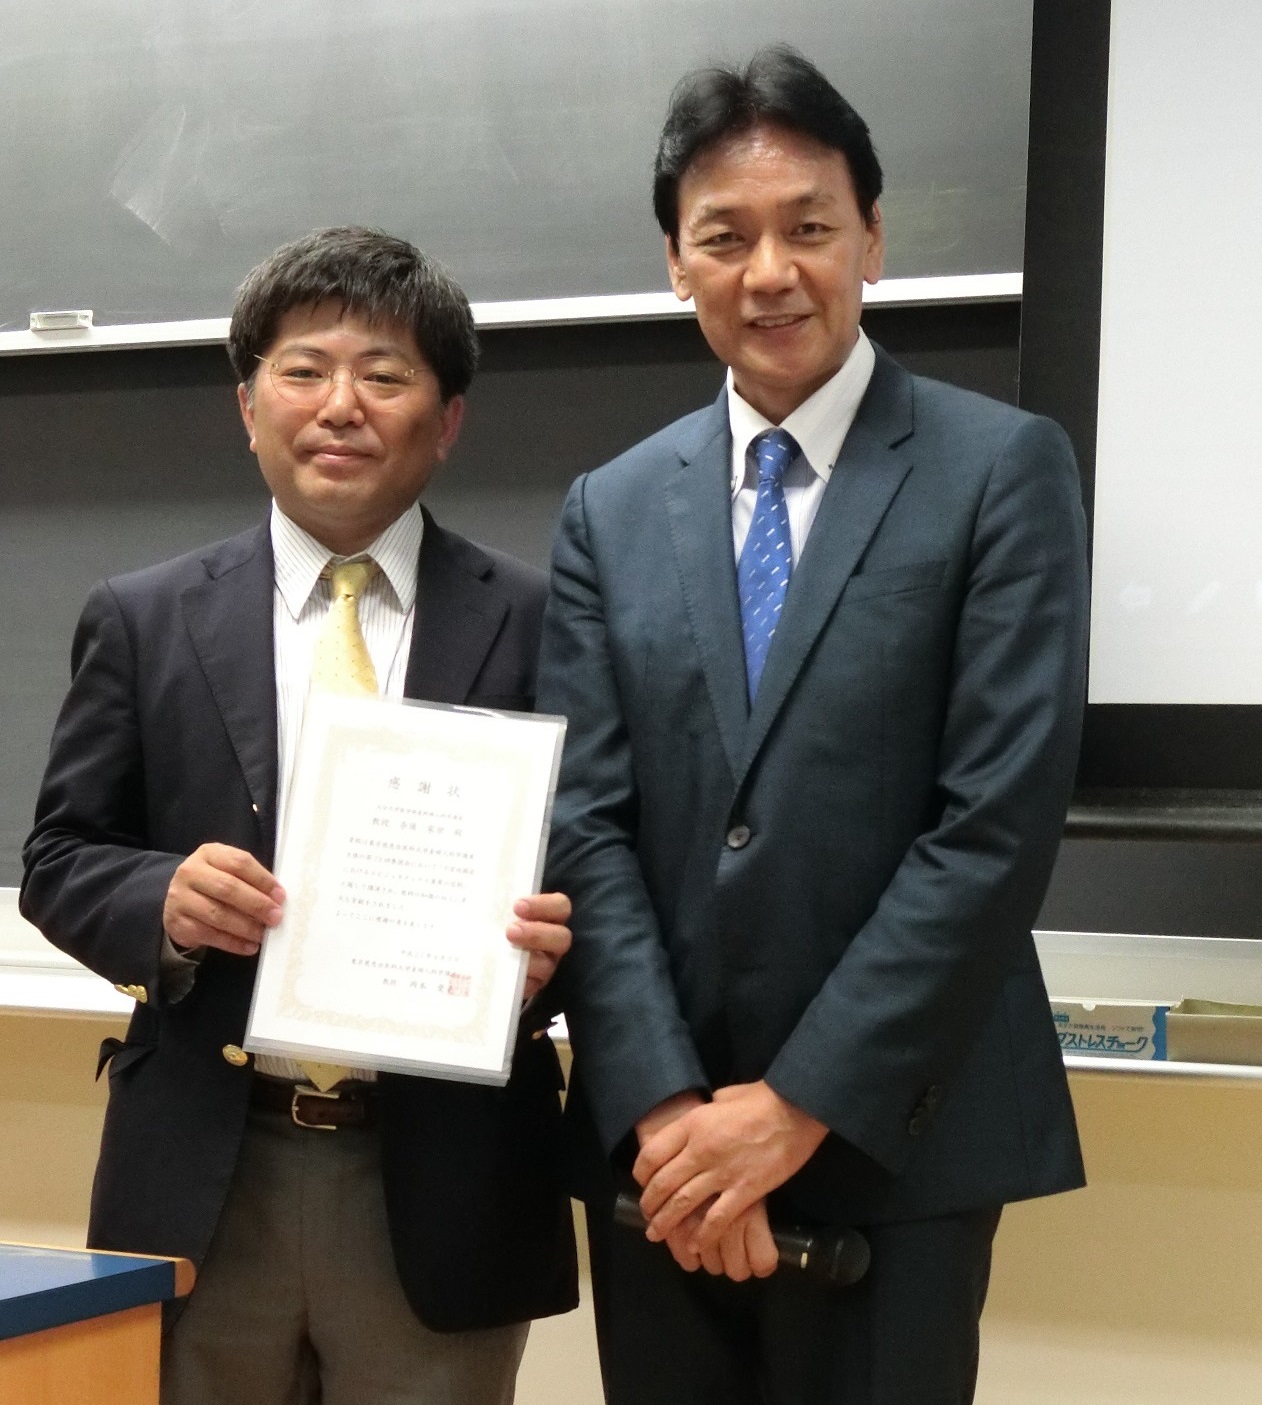 第73回集談会で奈須家栄先生にご講演頂きました。